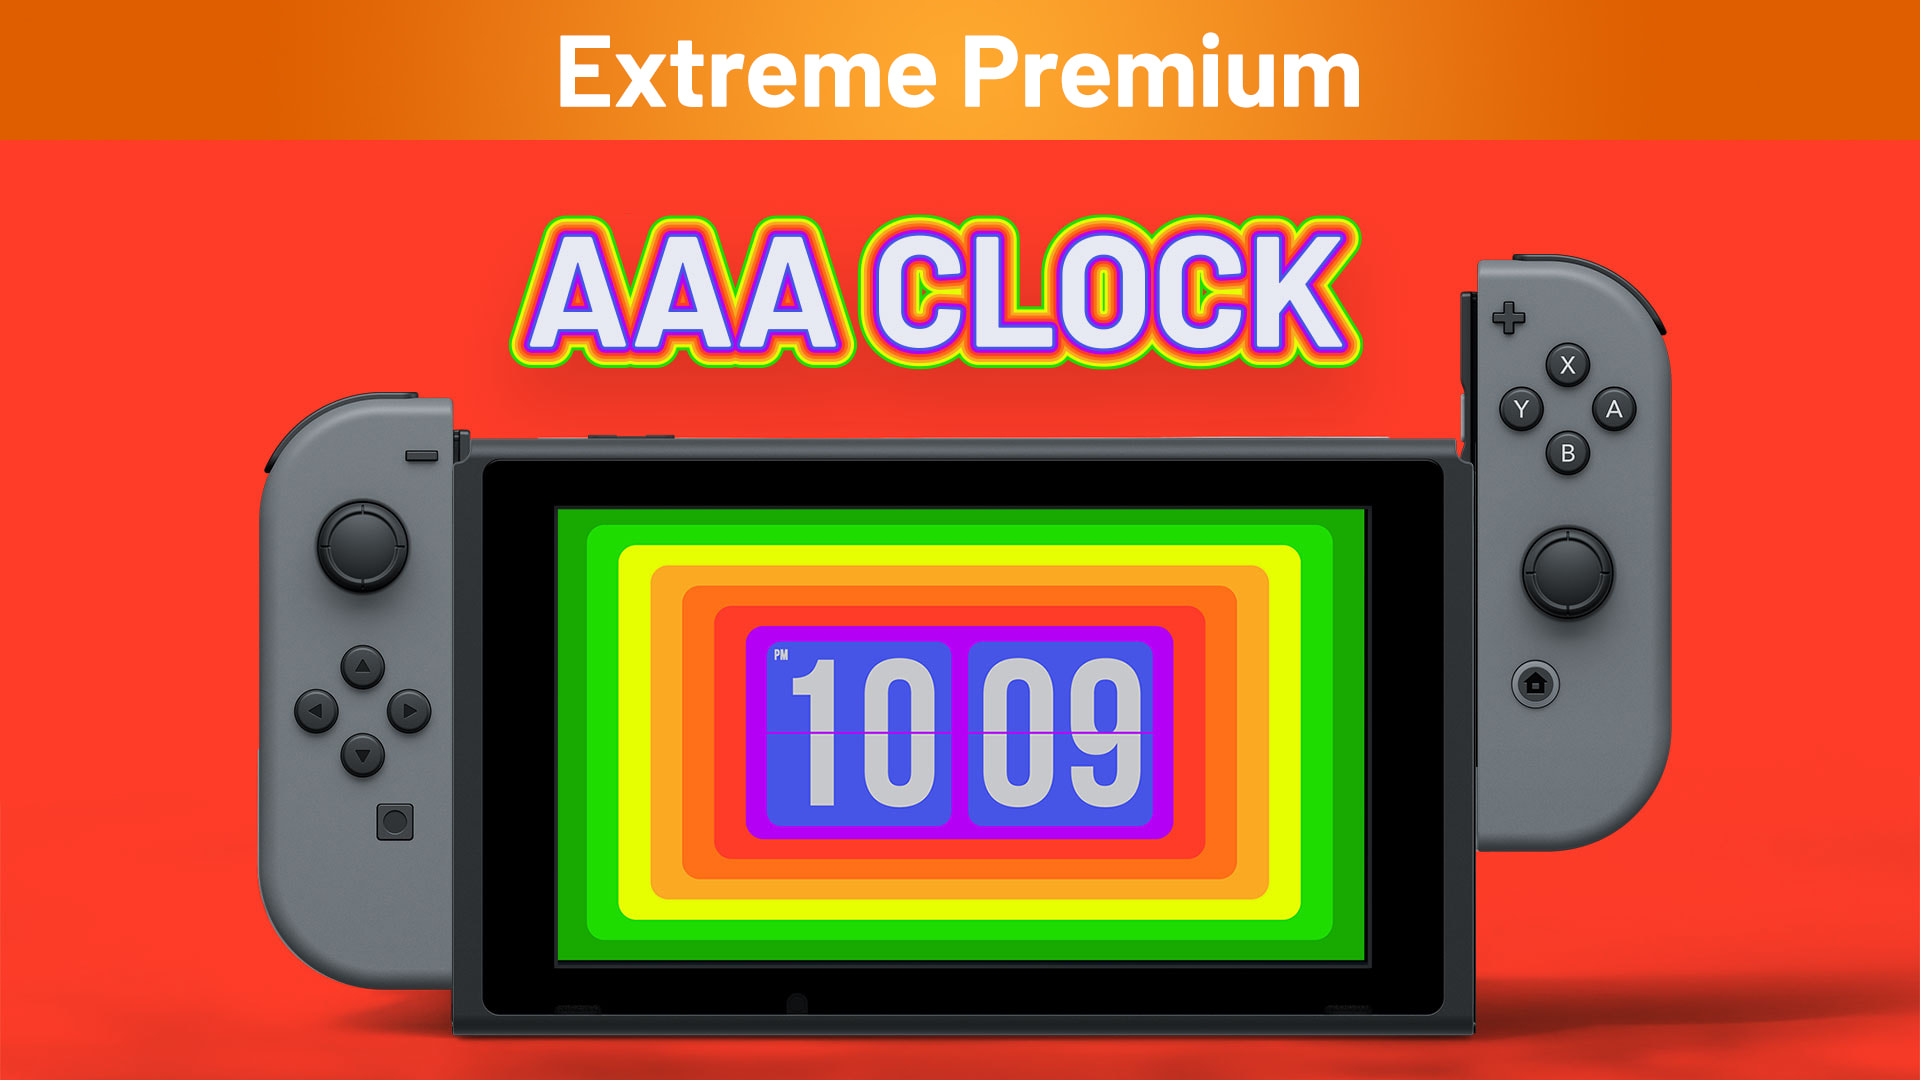 AAA Clock Extreme Premium